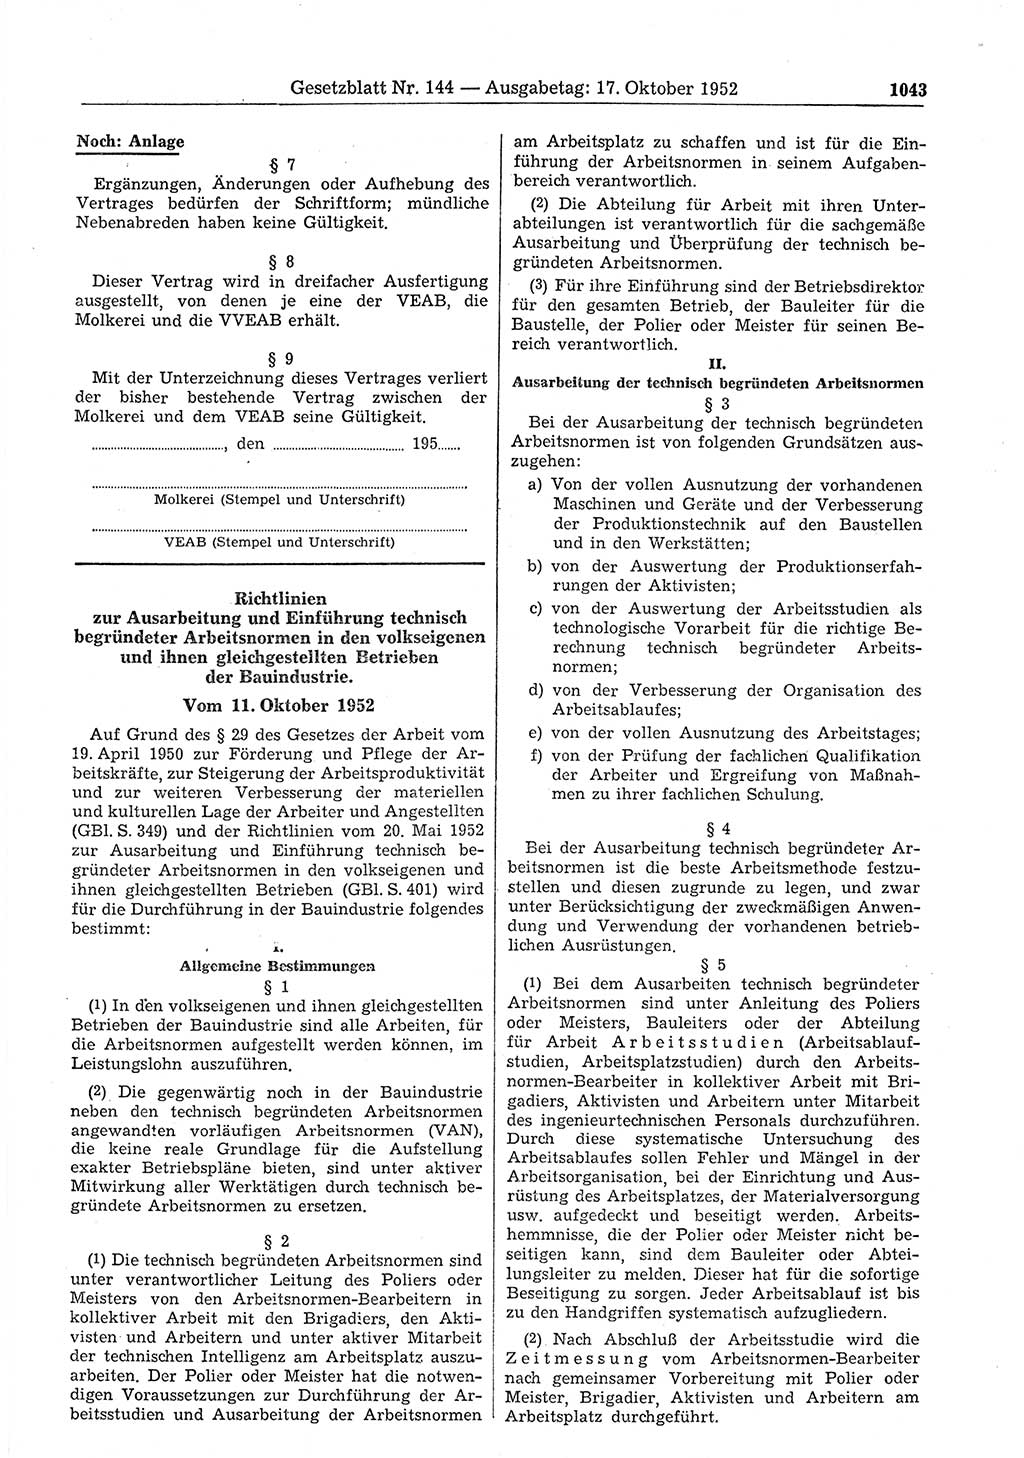 Gesetzblatt (GBl.) der Deutschen Demokratischen Republik (DDR) 1952, Seite 1043 (GBl. DDR 1952, S. 1043)